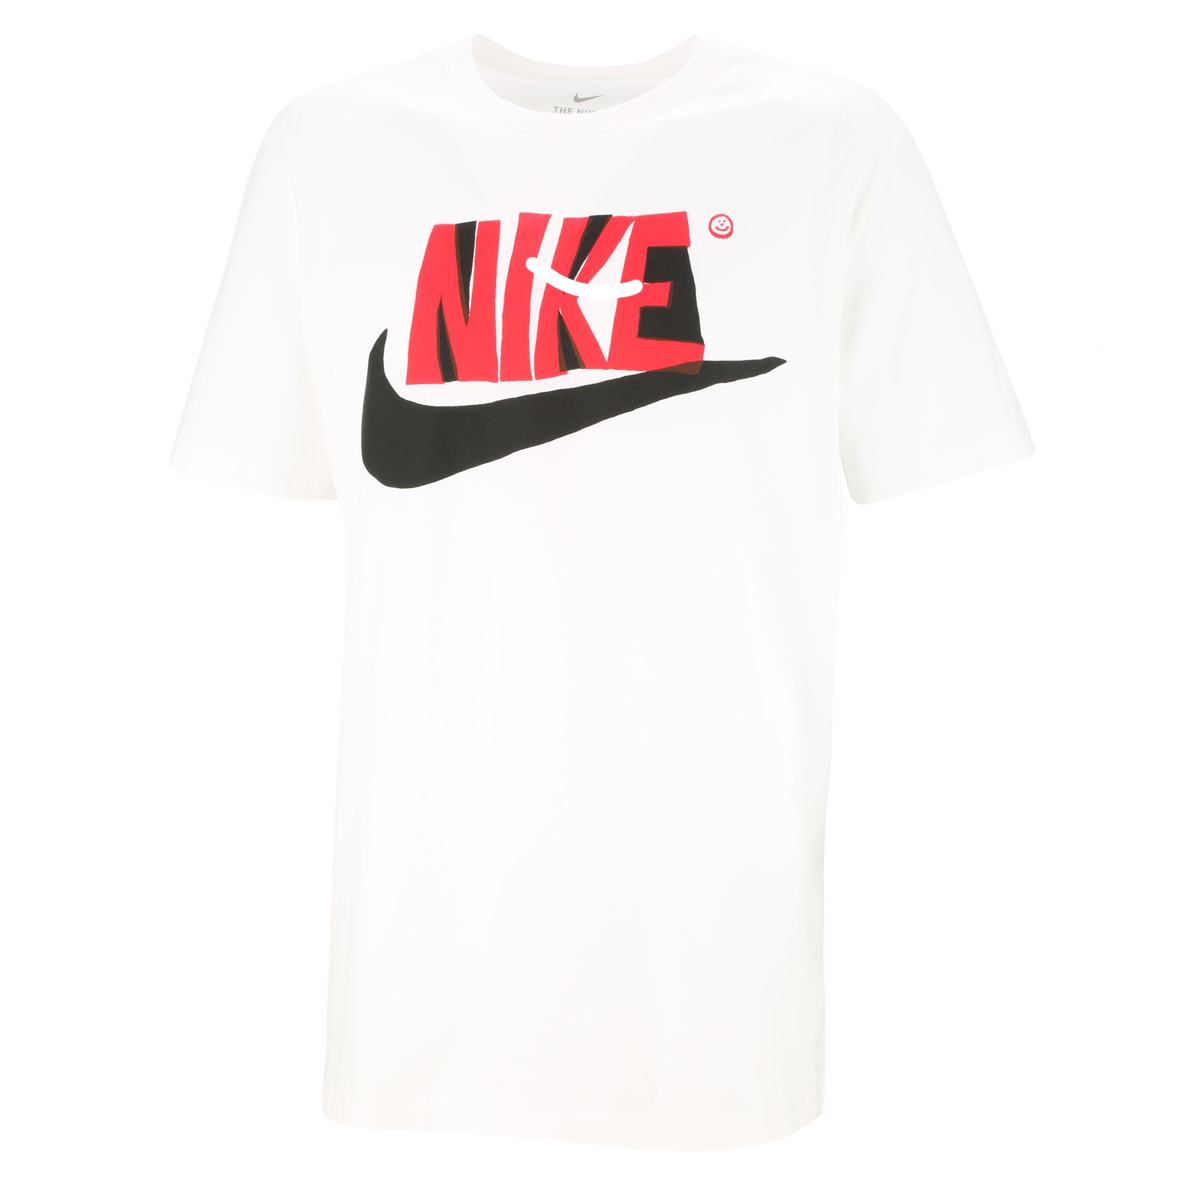 Remera Nike 2 Reverse Season,  image number null